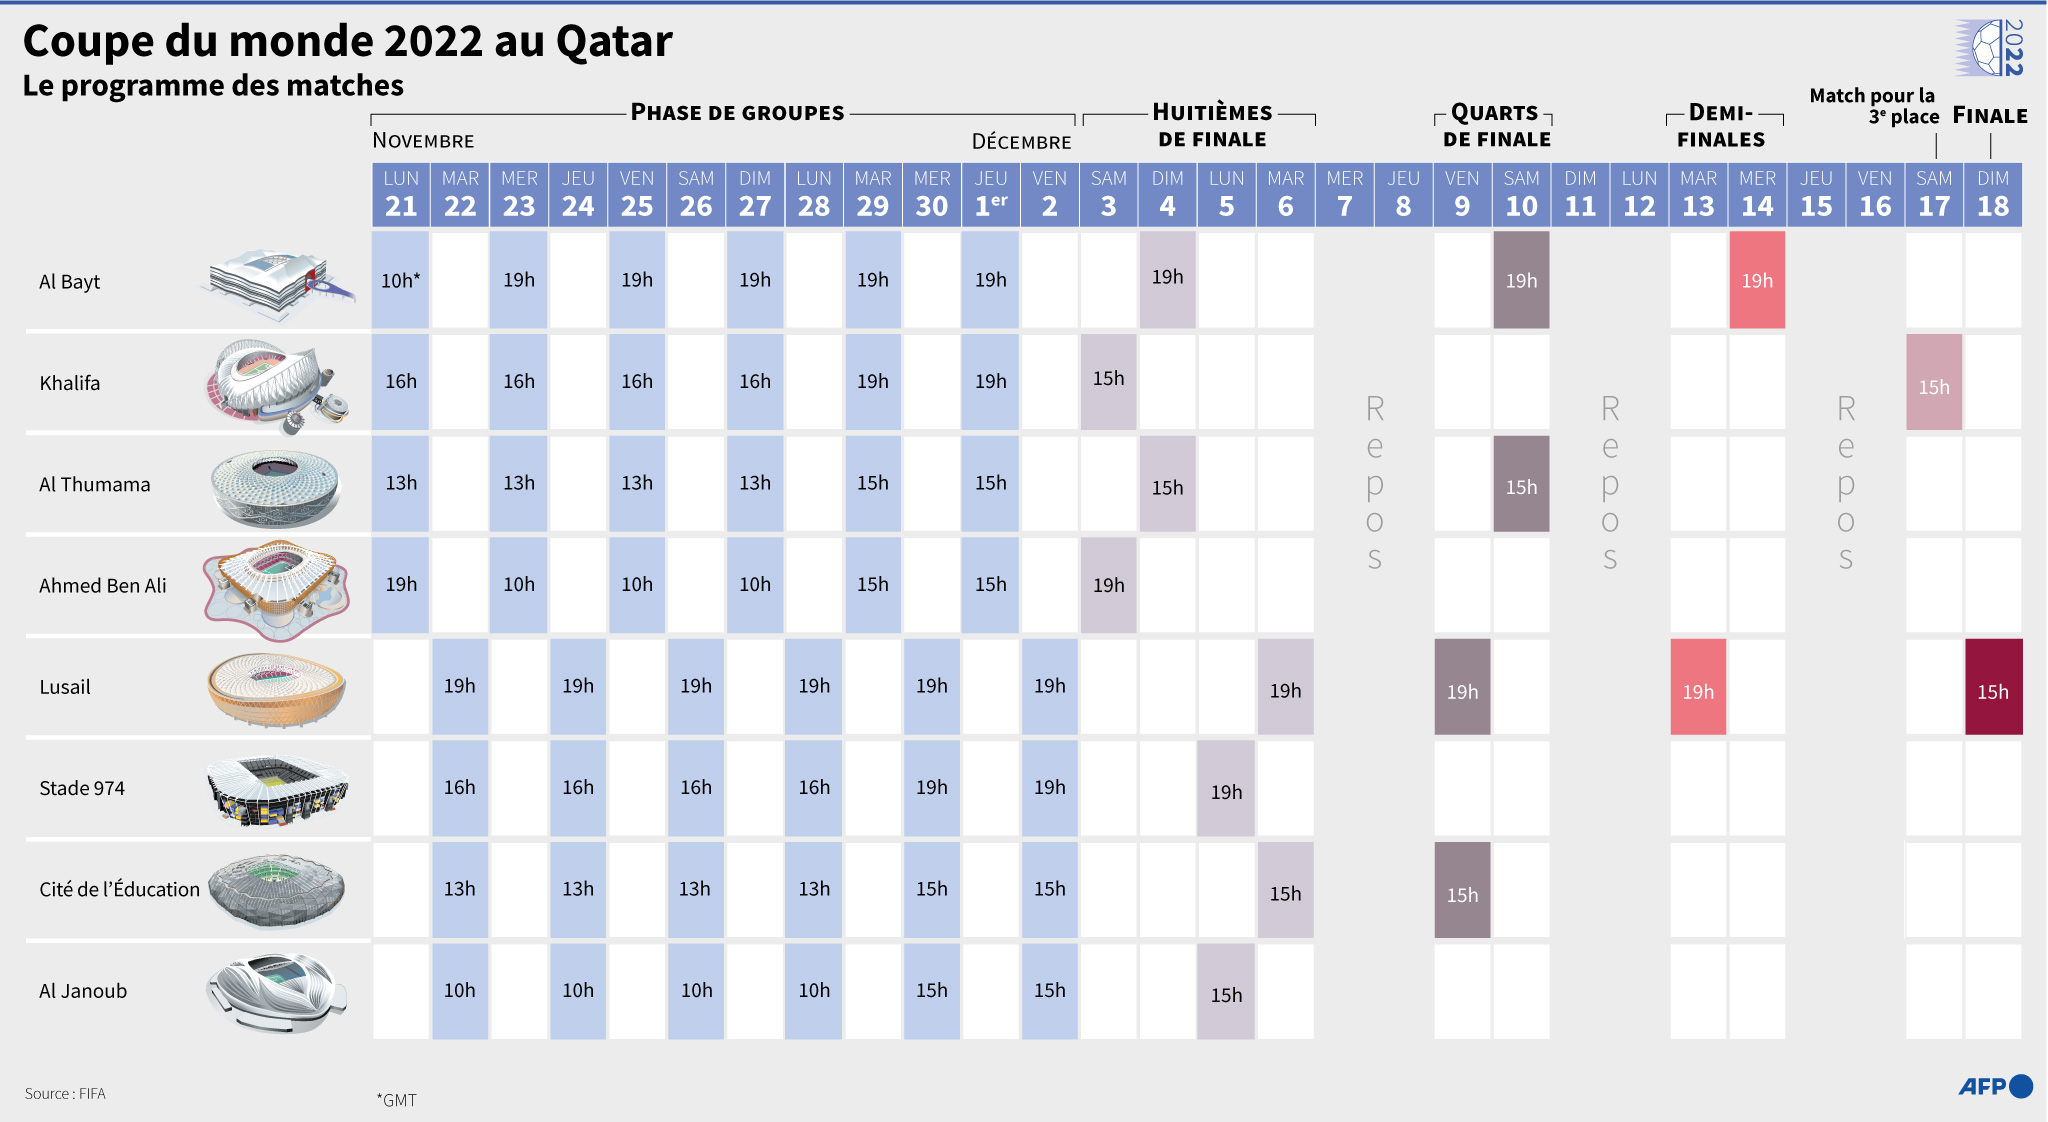 Programme des matches de la Coupe du monde 2022 au Qatar (Infographie)